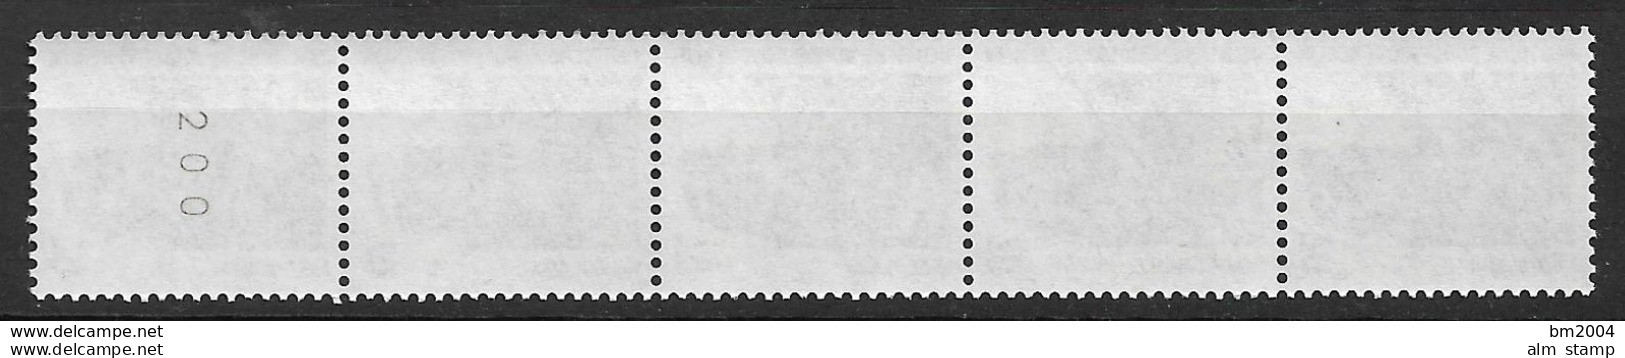 1990 Berlin Mi. 874 **MNH  Nr. 200 Sehenswürdigkeiten: Helgoland - Rollenmarken